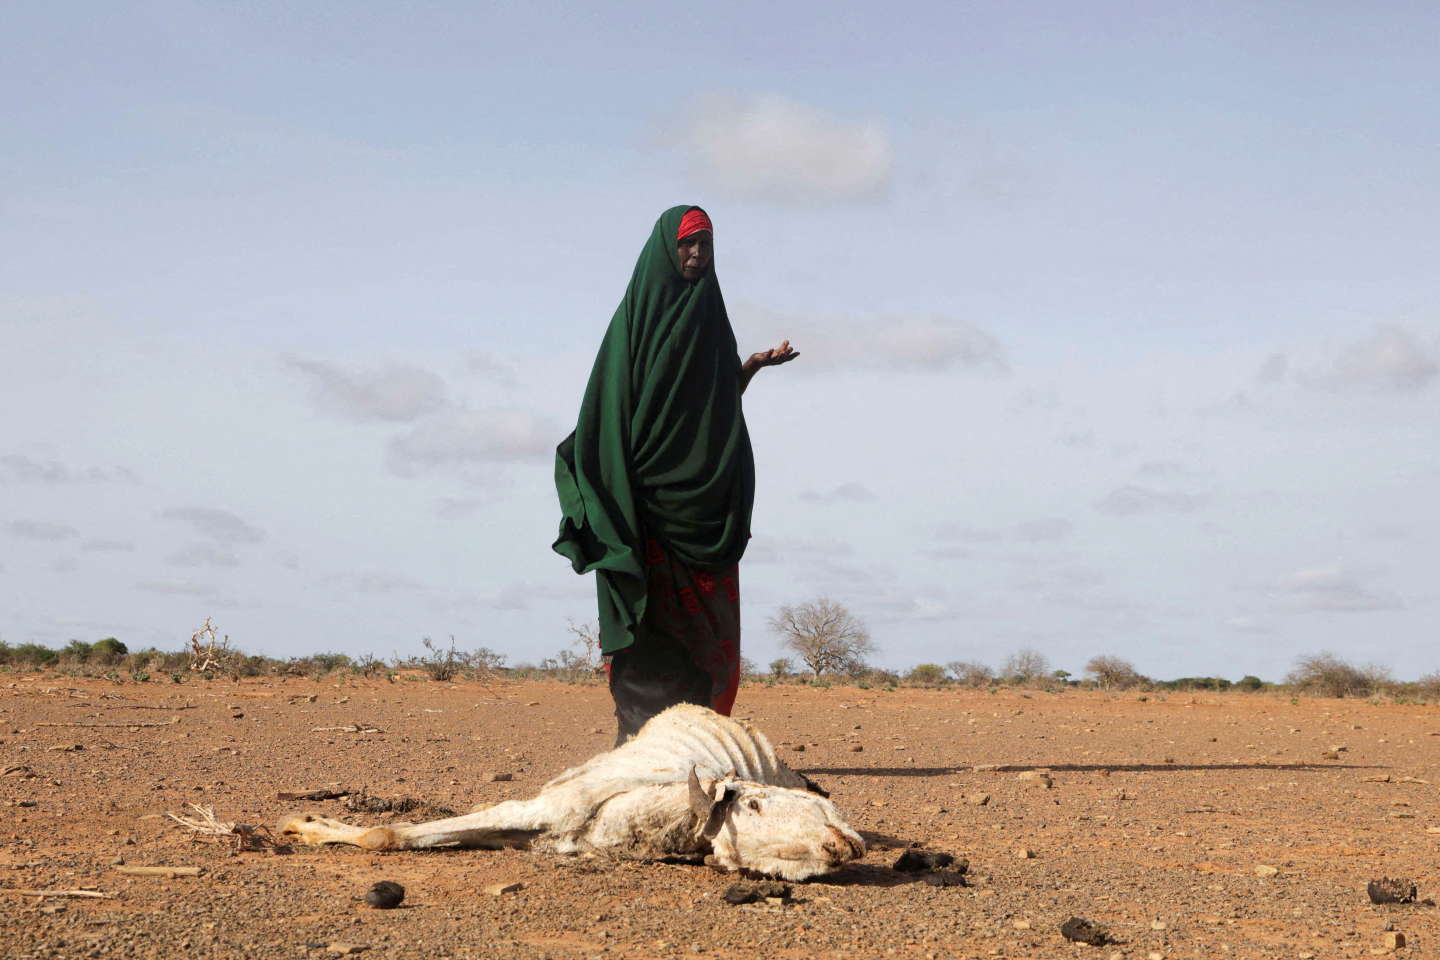 Faute de pluies, la Corne de l’Afrique de nouveau menacée par la famine